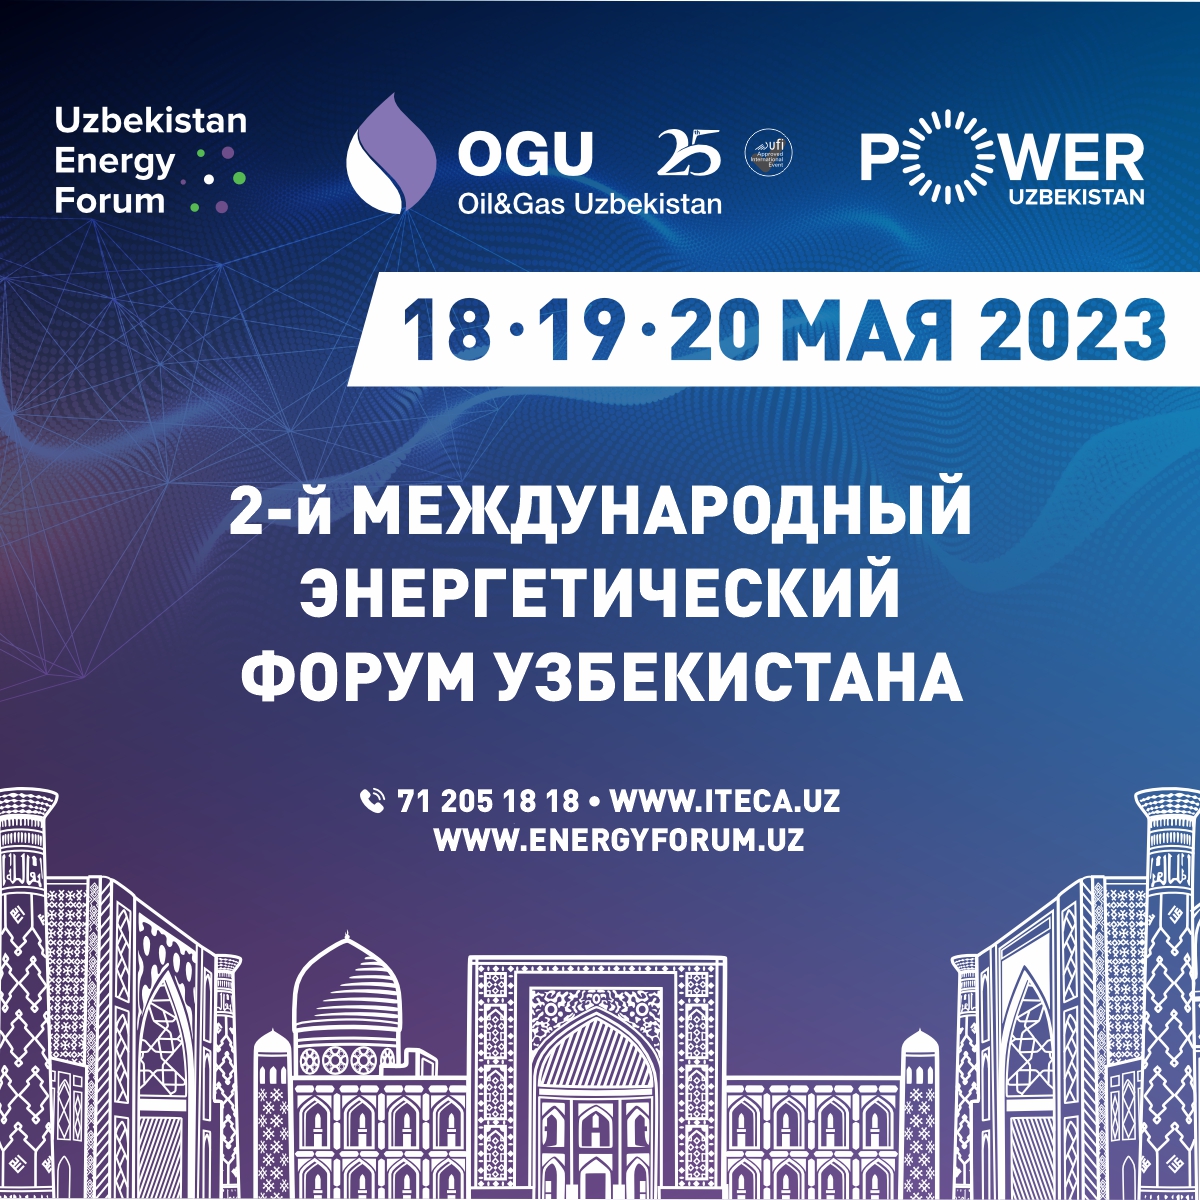 МИНЭНЕРГО: в период с 18 по 20 мая 2023 года в Ташкенте пройдет второй международный энергетический форум Узбекистана